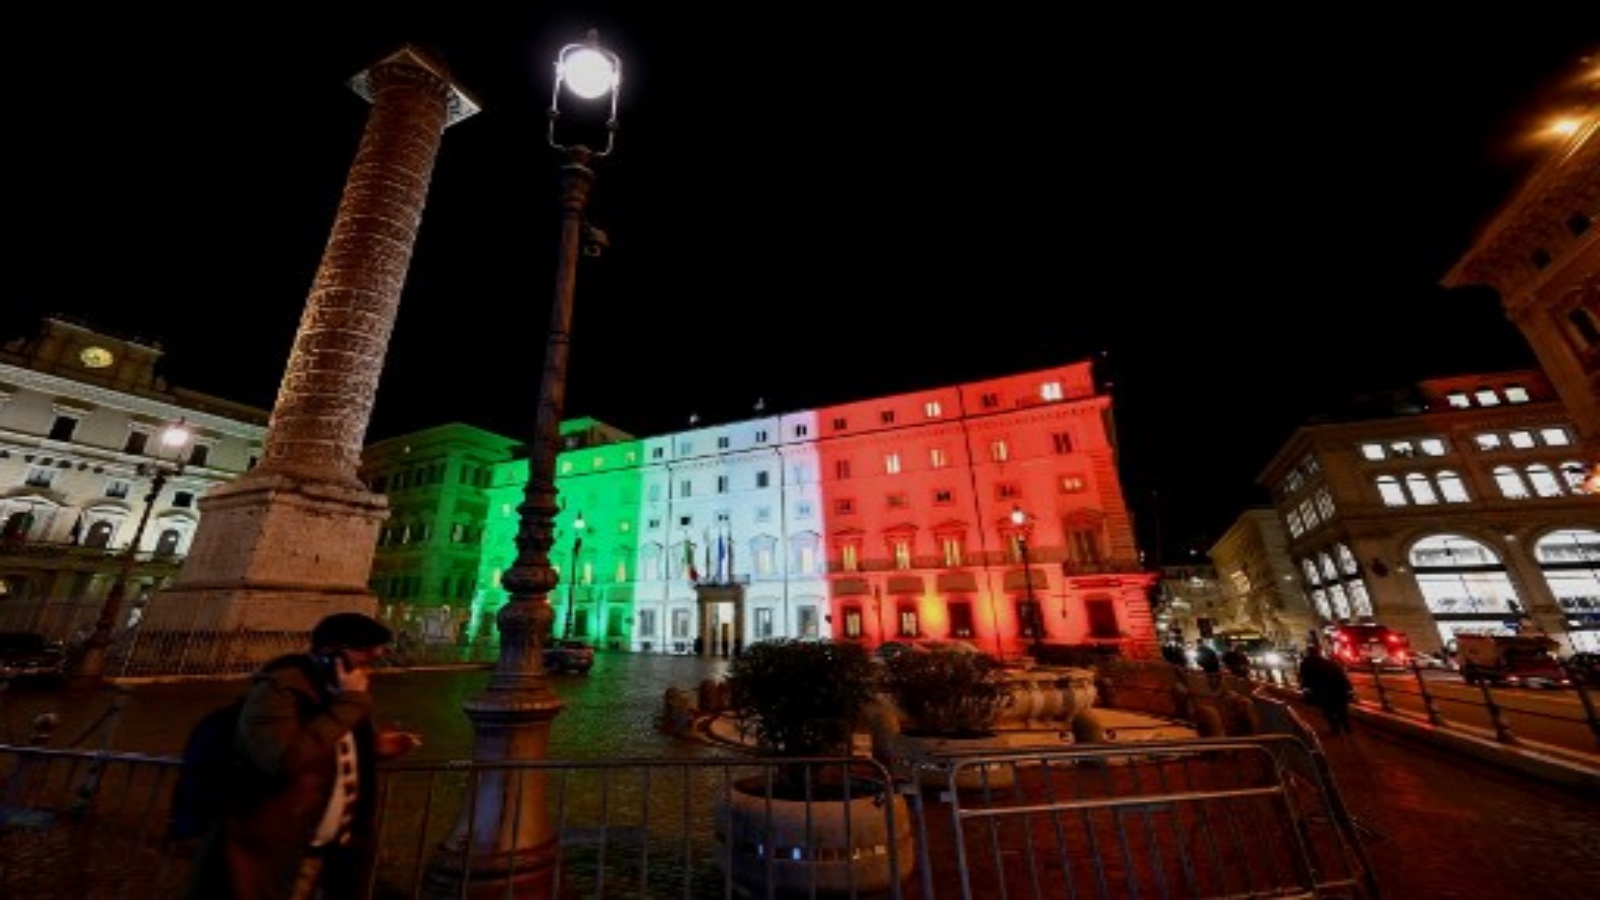 صورة تم التقاطها في 12 يناير 2021 في روما أن قصر شيغي ، مقر الحكومة الإيطالية ، مضاء بألوان العلم الإيطالي حيث من المتوقع أن تناقش الحكومة الإيطالية في وقت لاحق حزمة إنفاق للتعافي من فيروس كورونا بقيمة 220 مليار يورو.